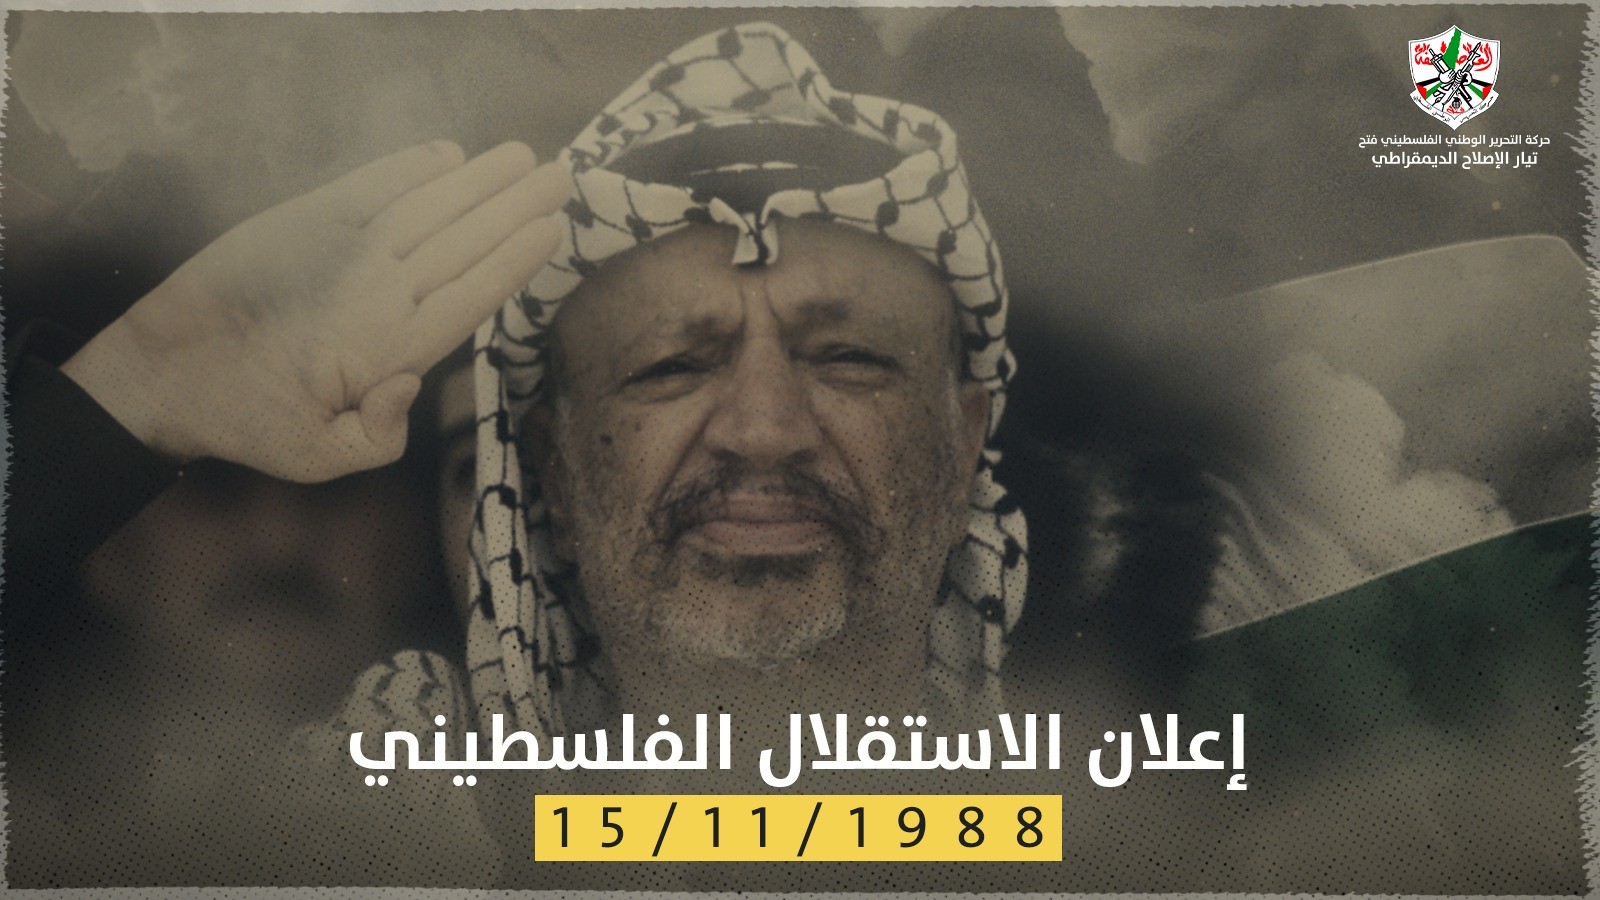 شاهد: نشطاء فلسطينون يُحيون الذكرى الـ33 لإعلان وثيقة الاستقلال